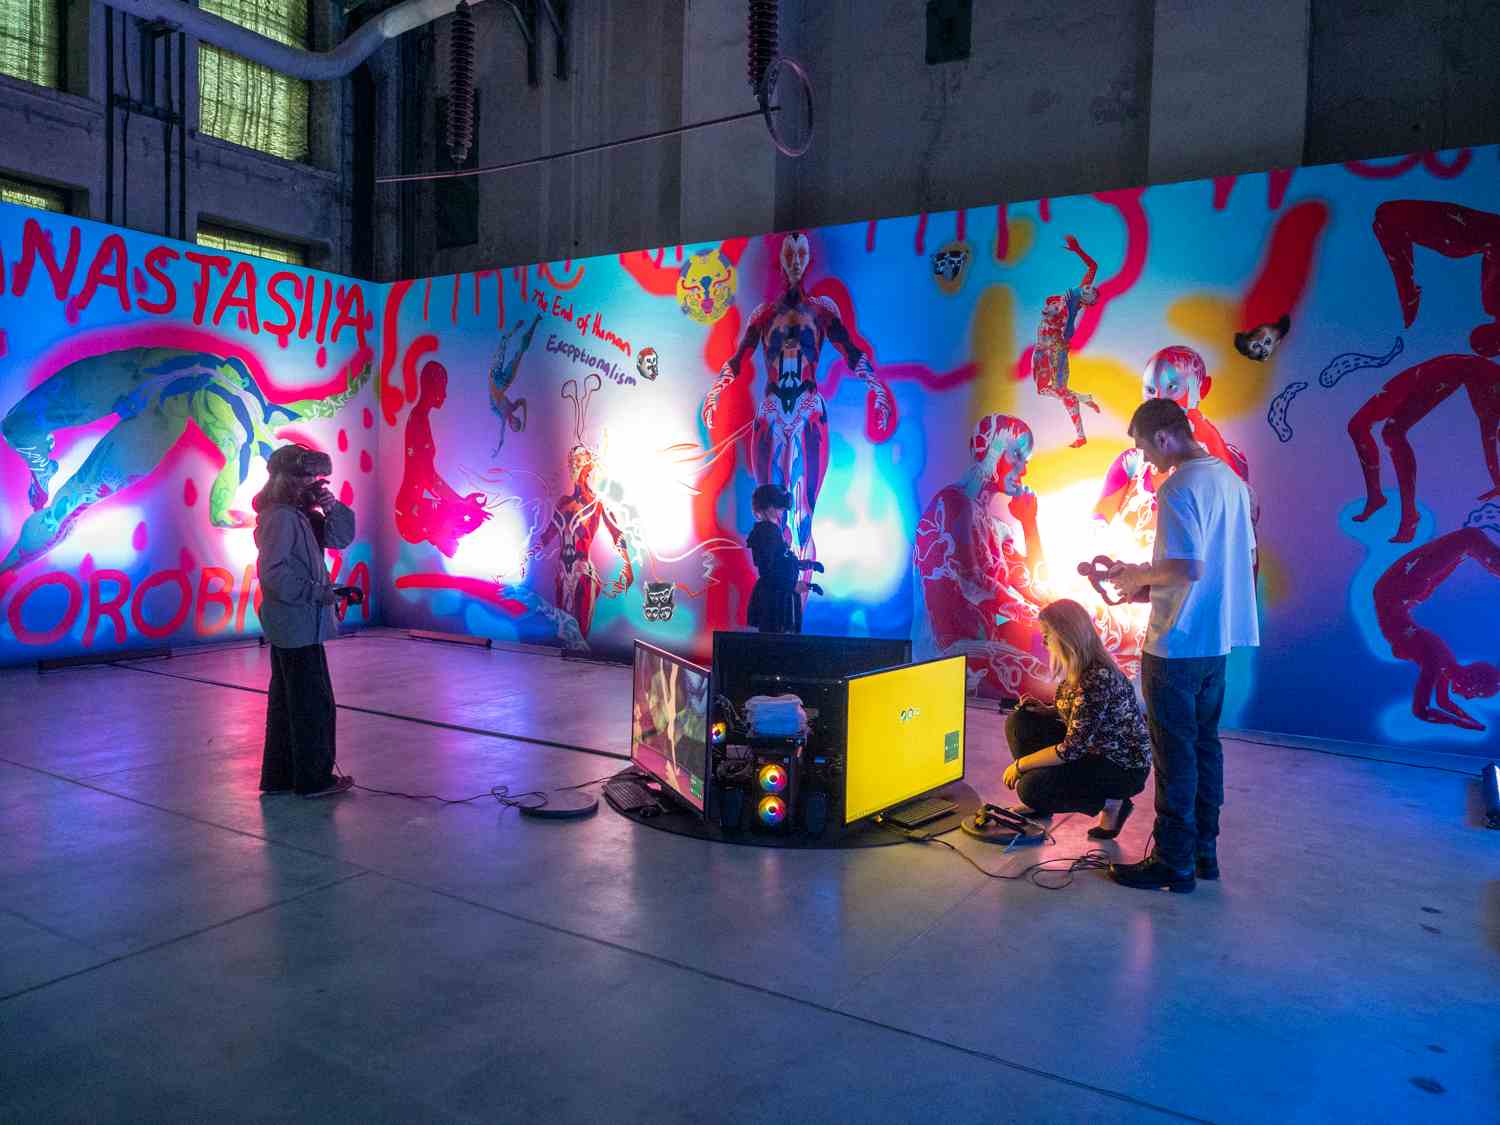 Wystawa z kolorowymi podświetlonymi pracami wizualnymi, na środku stoją ludzie z okularami do wirtualnej rzeczywistości.